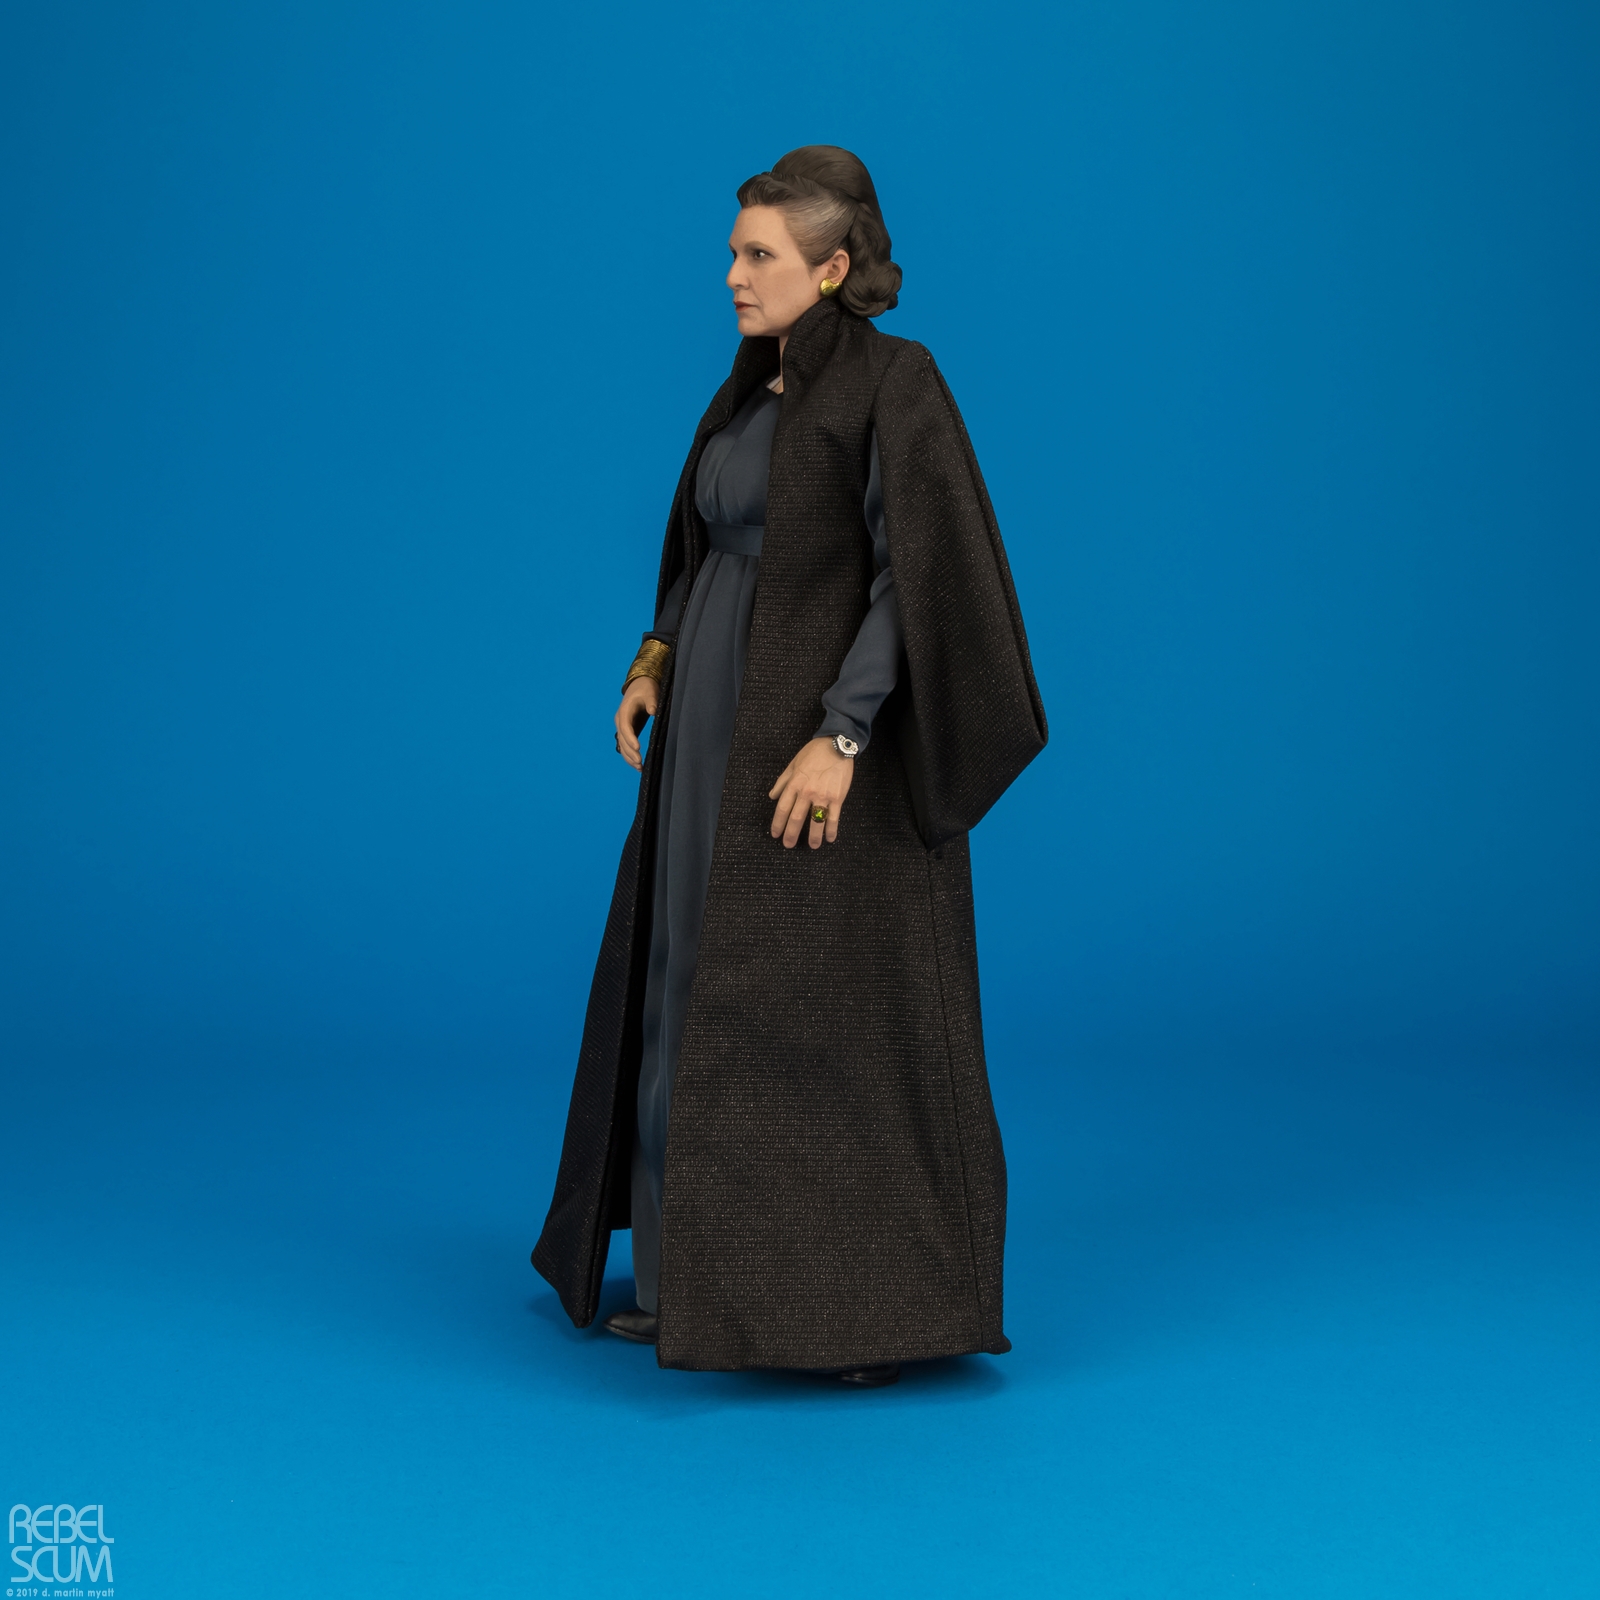 MMS459-Leia-Organa-The-Last-Jedi-Star-Wars-Hot-Toys-003.jpg